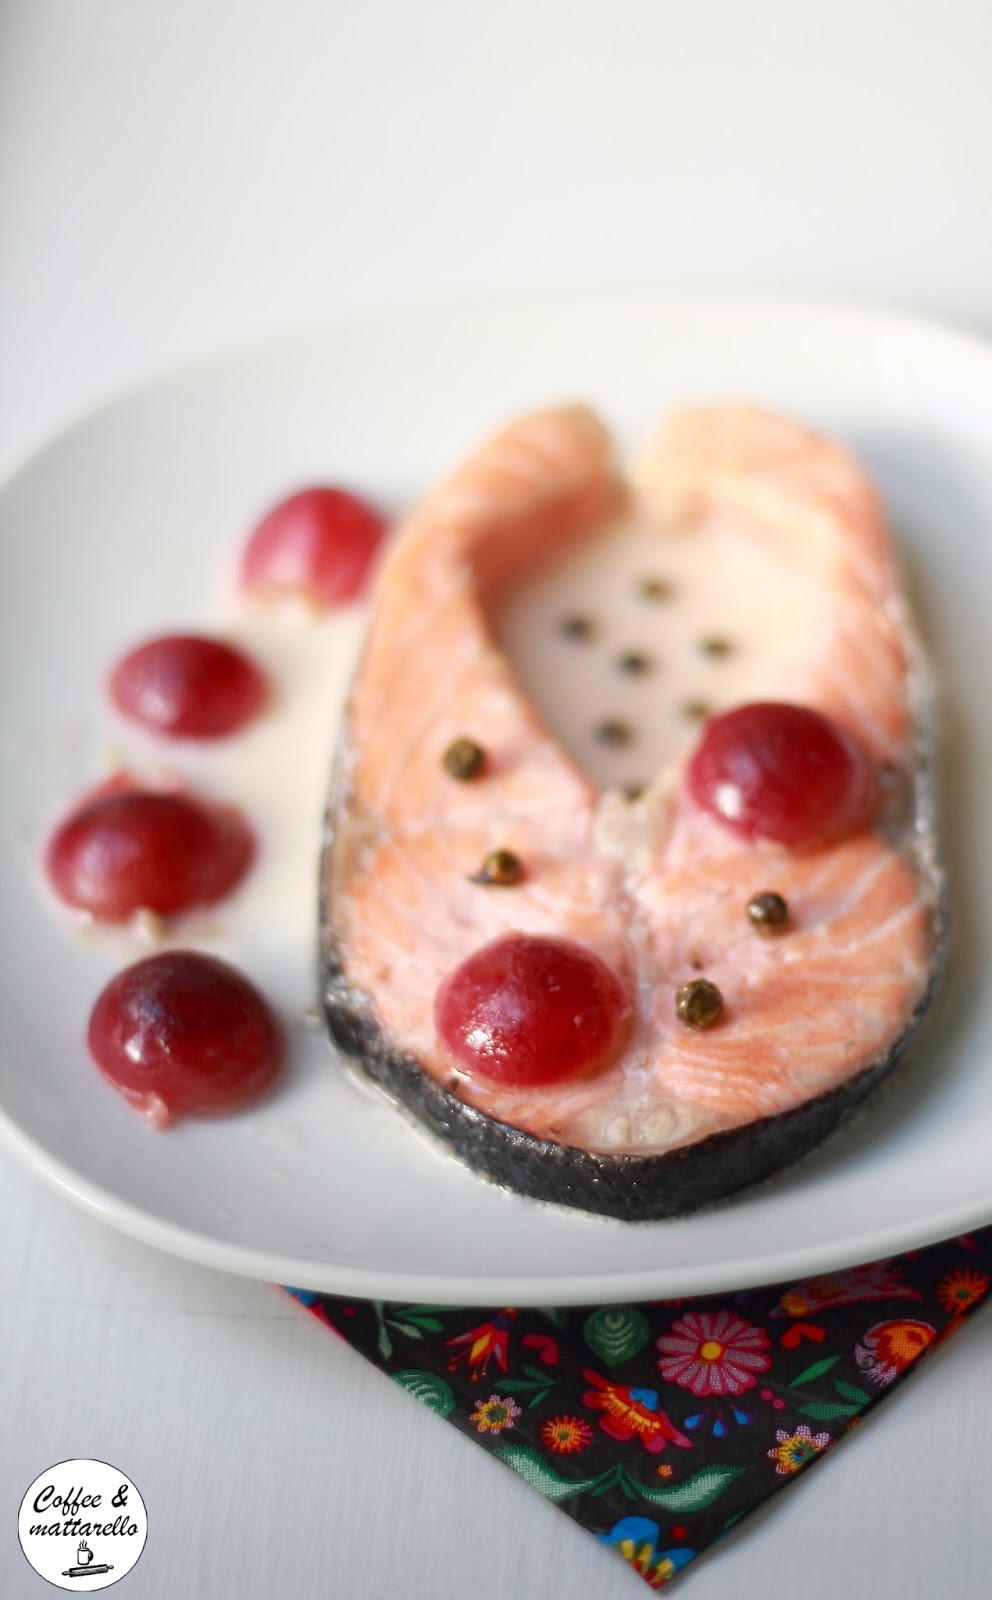 stagioniamo #19: tranci di salmone all'uva nera e pepe verde